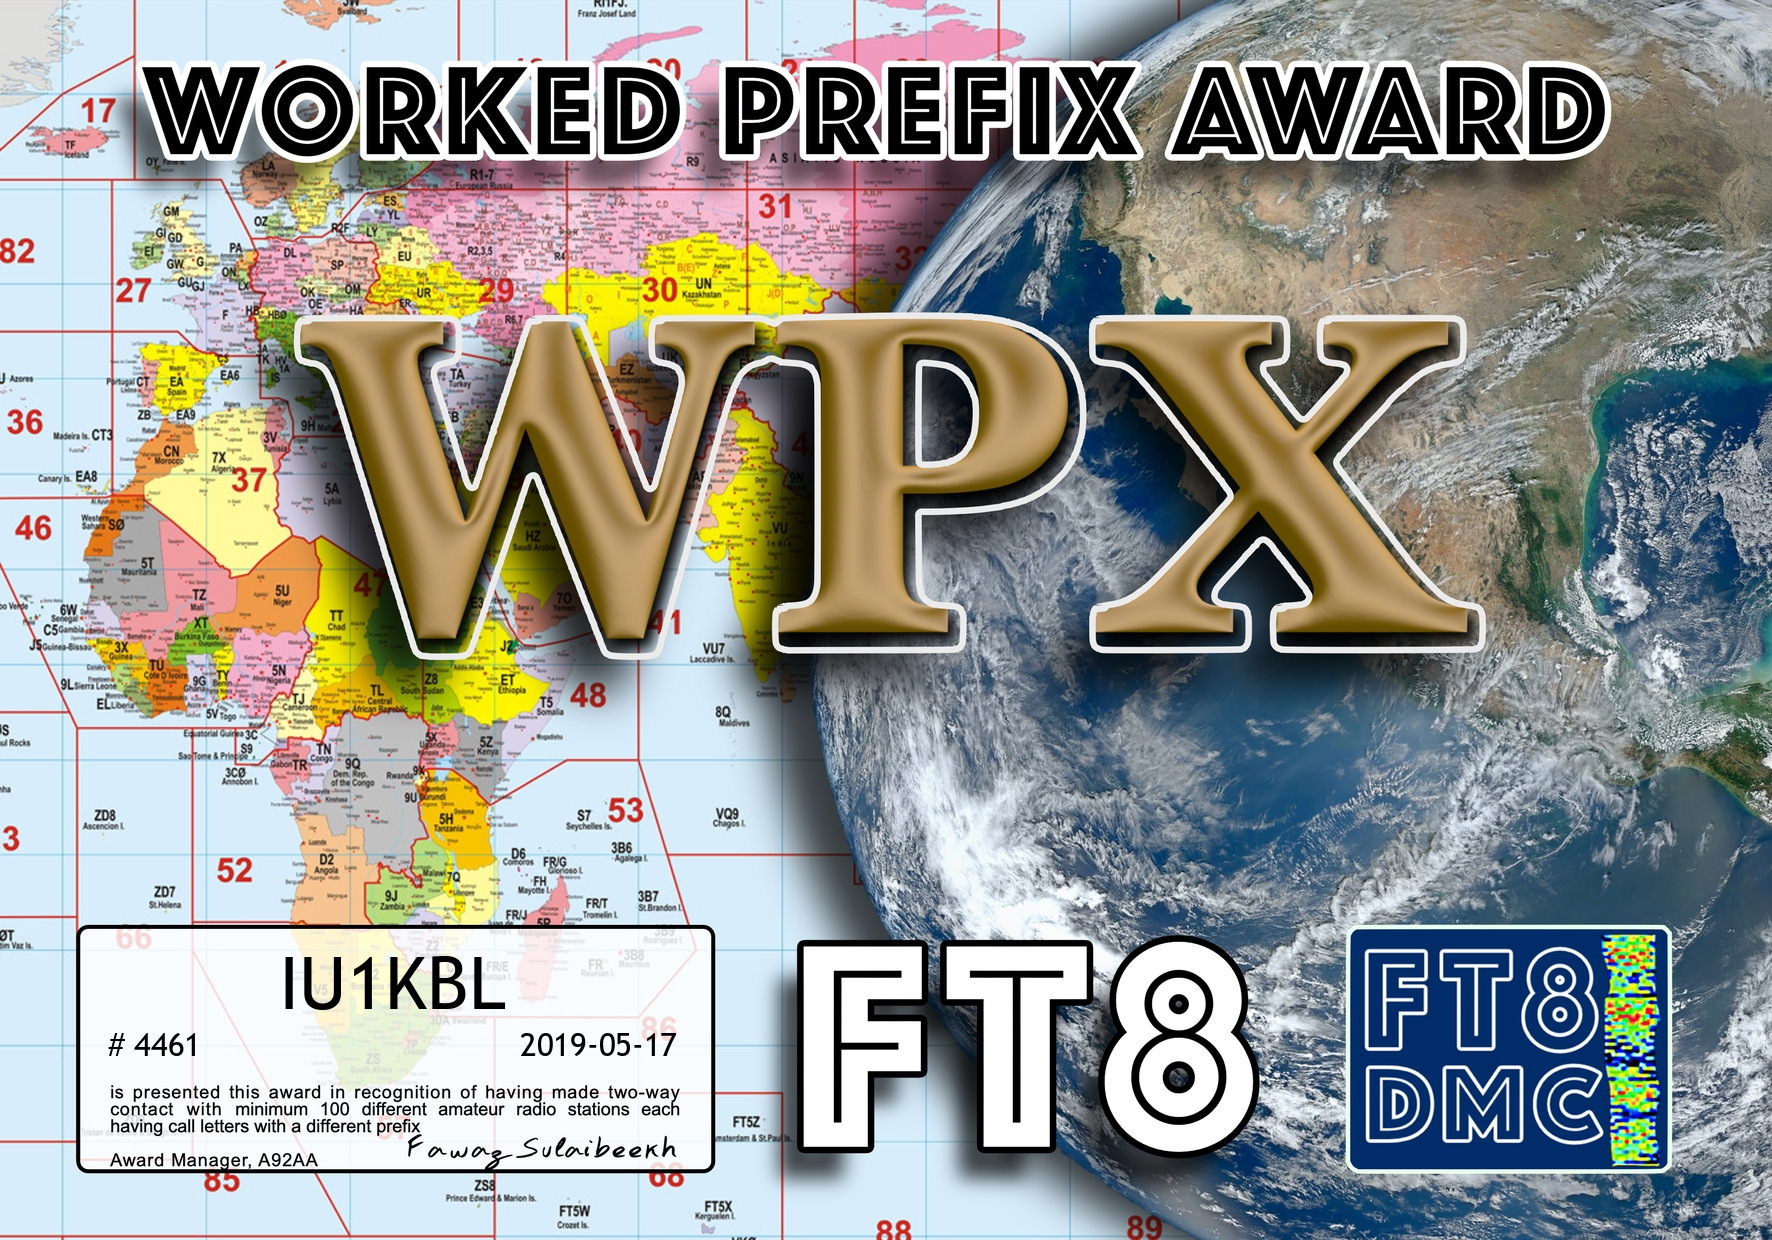 IU1KBL-WPX-100_FT8DMC.jpg